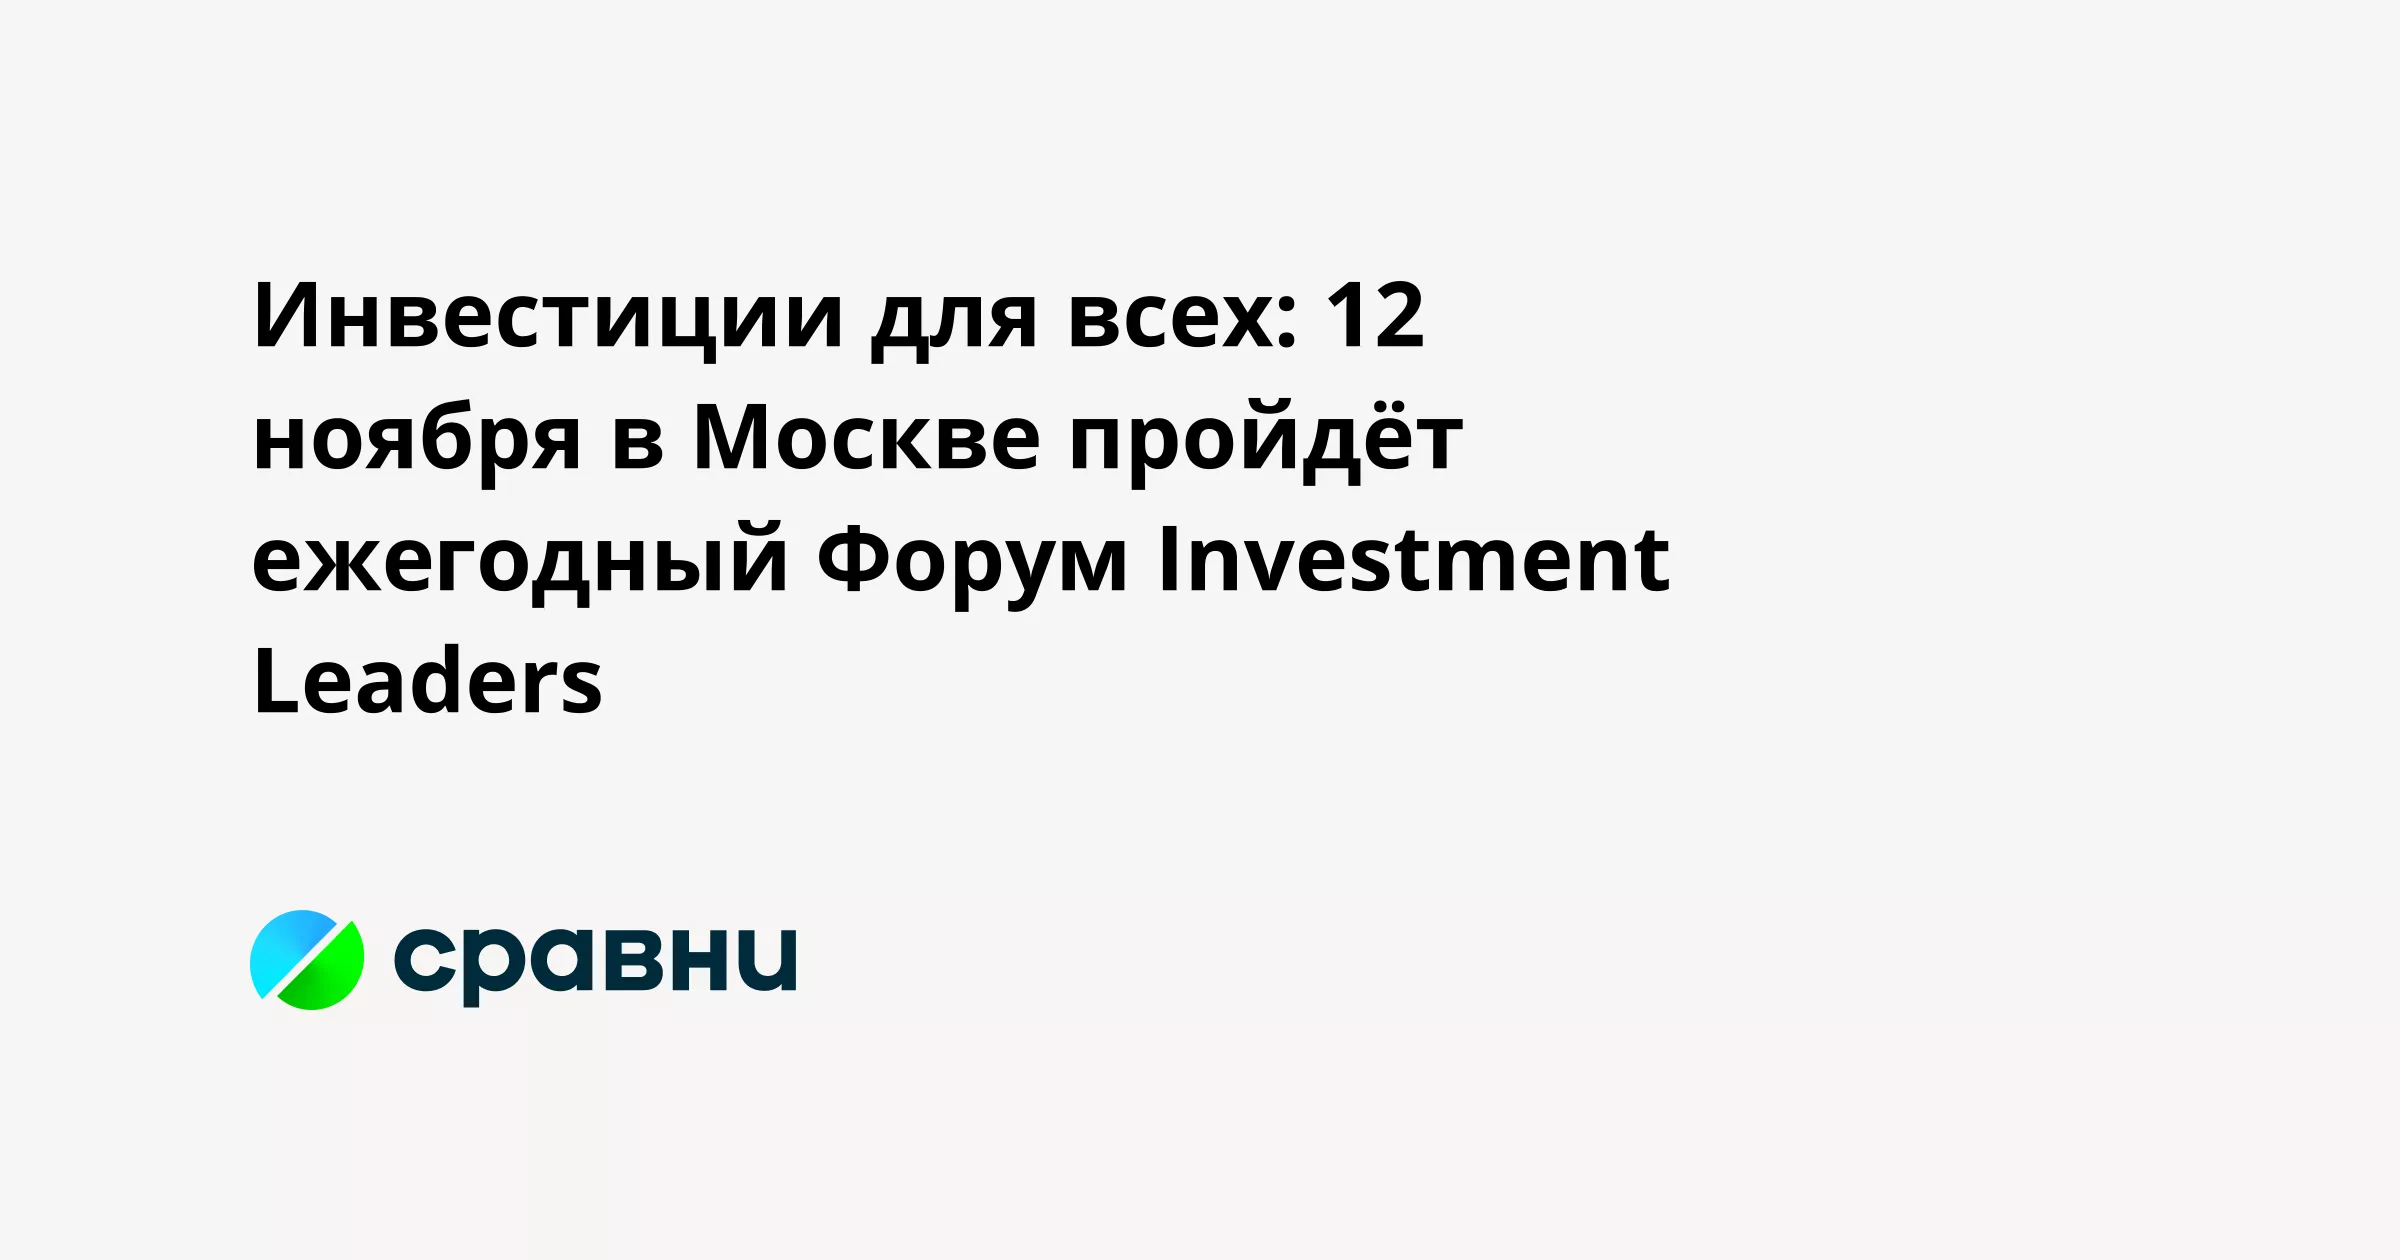 Инвестиции для всех: 12 ноября в Москве пройдёт ежегодный Форум Investment Leaders